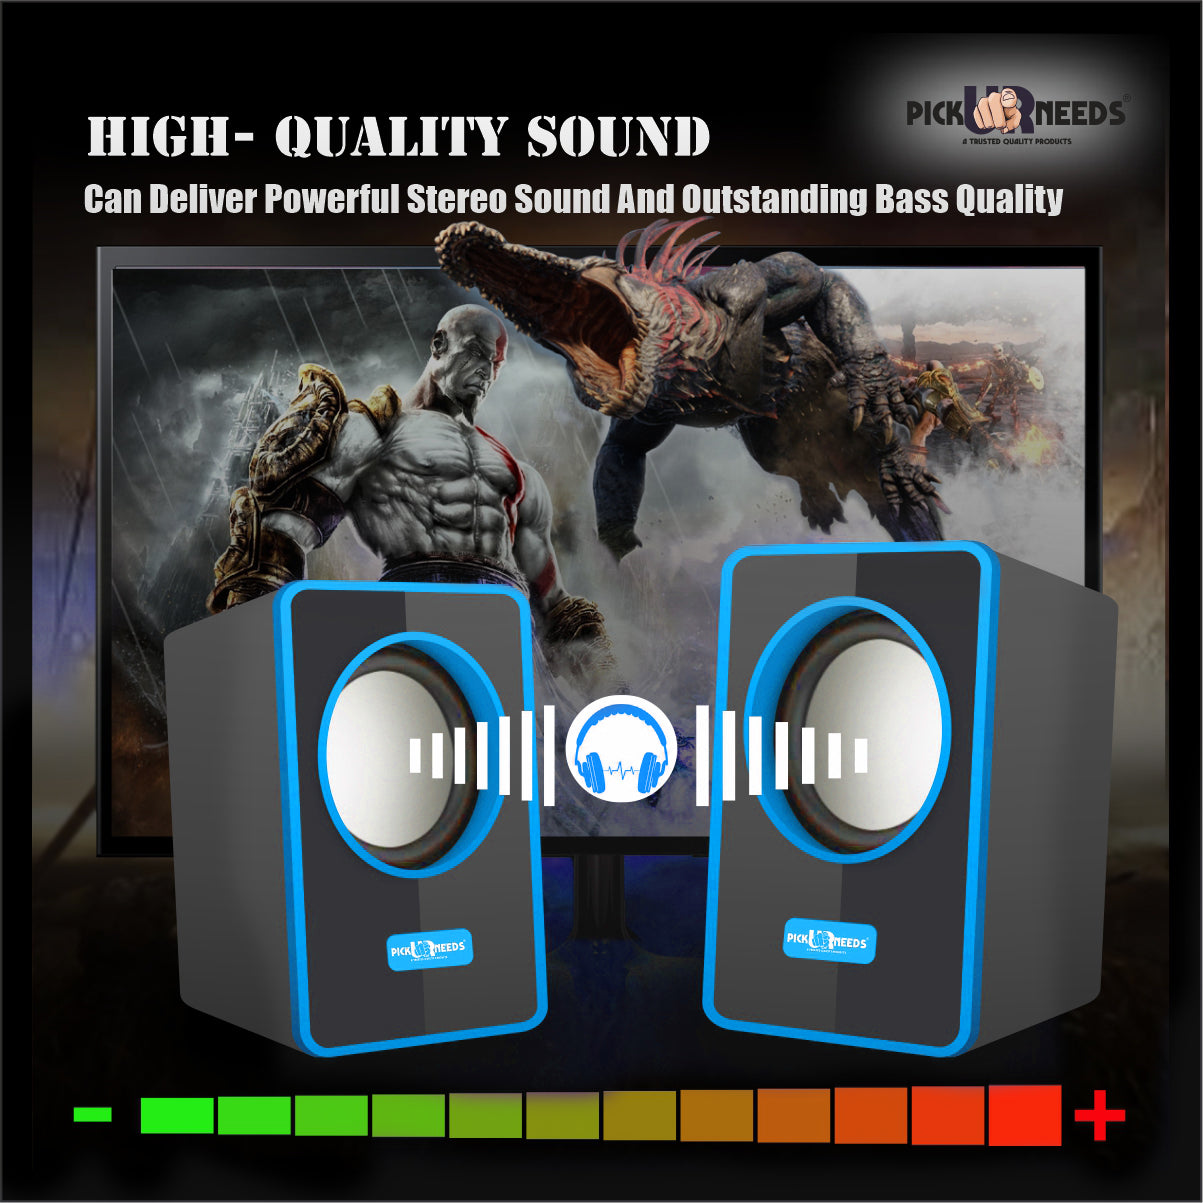 Pick Ur Needs® USB Multimedia Sound Bass Subwoofer Speaker System for PC Laptop